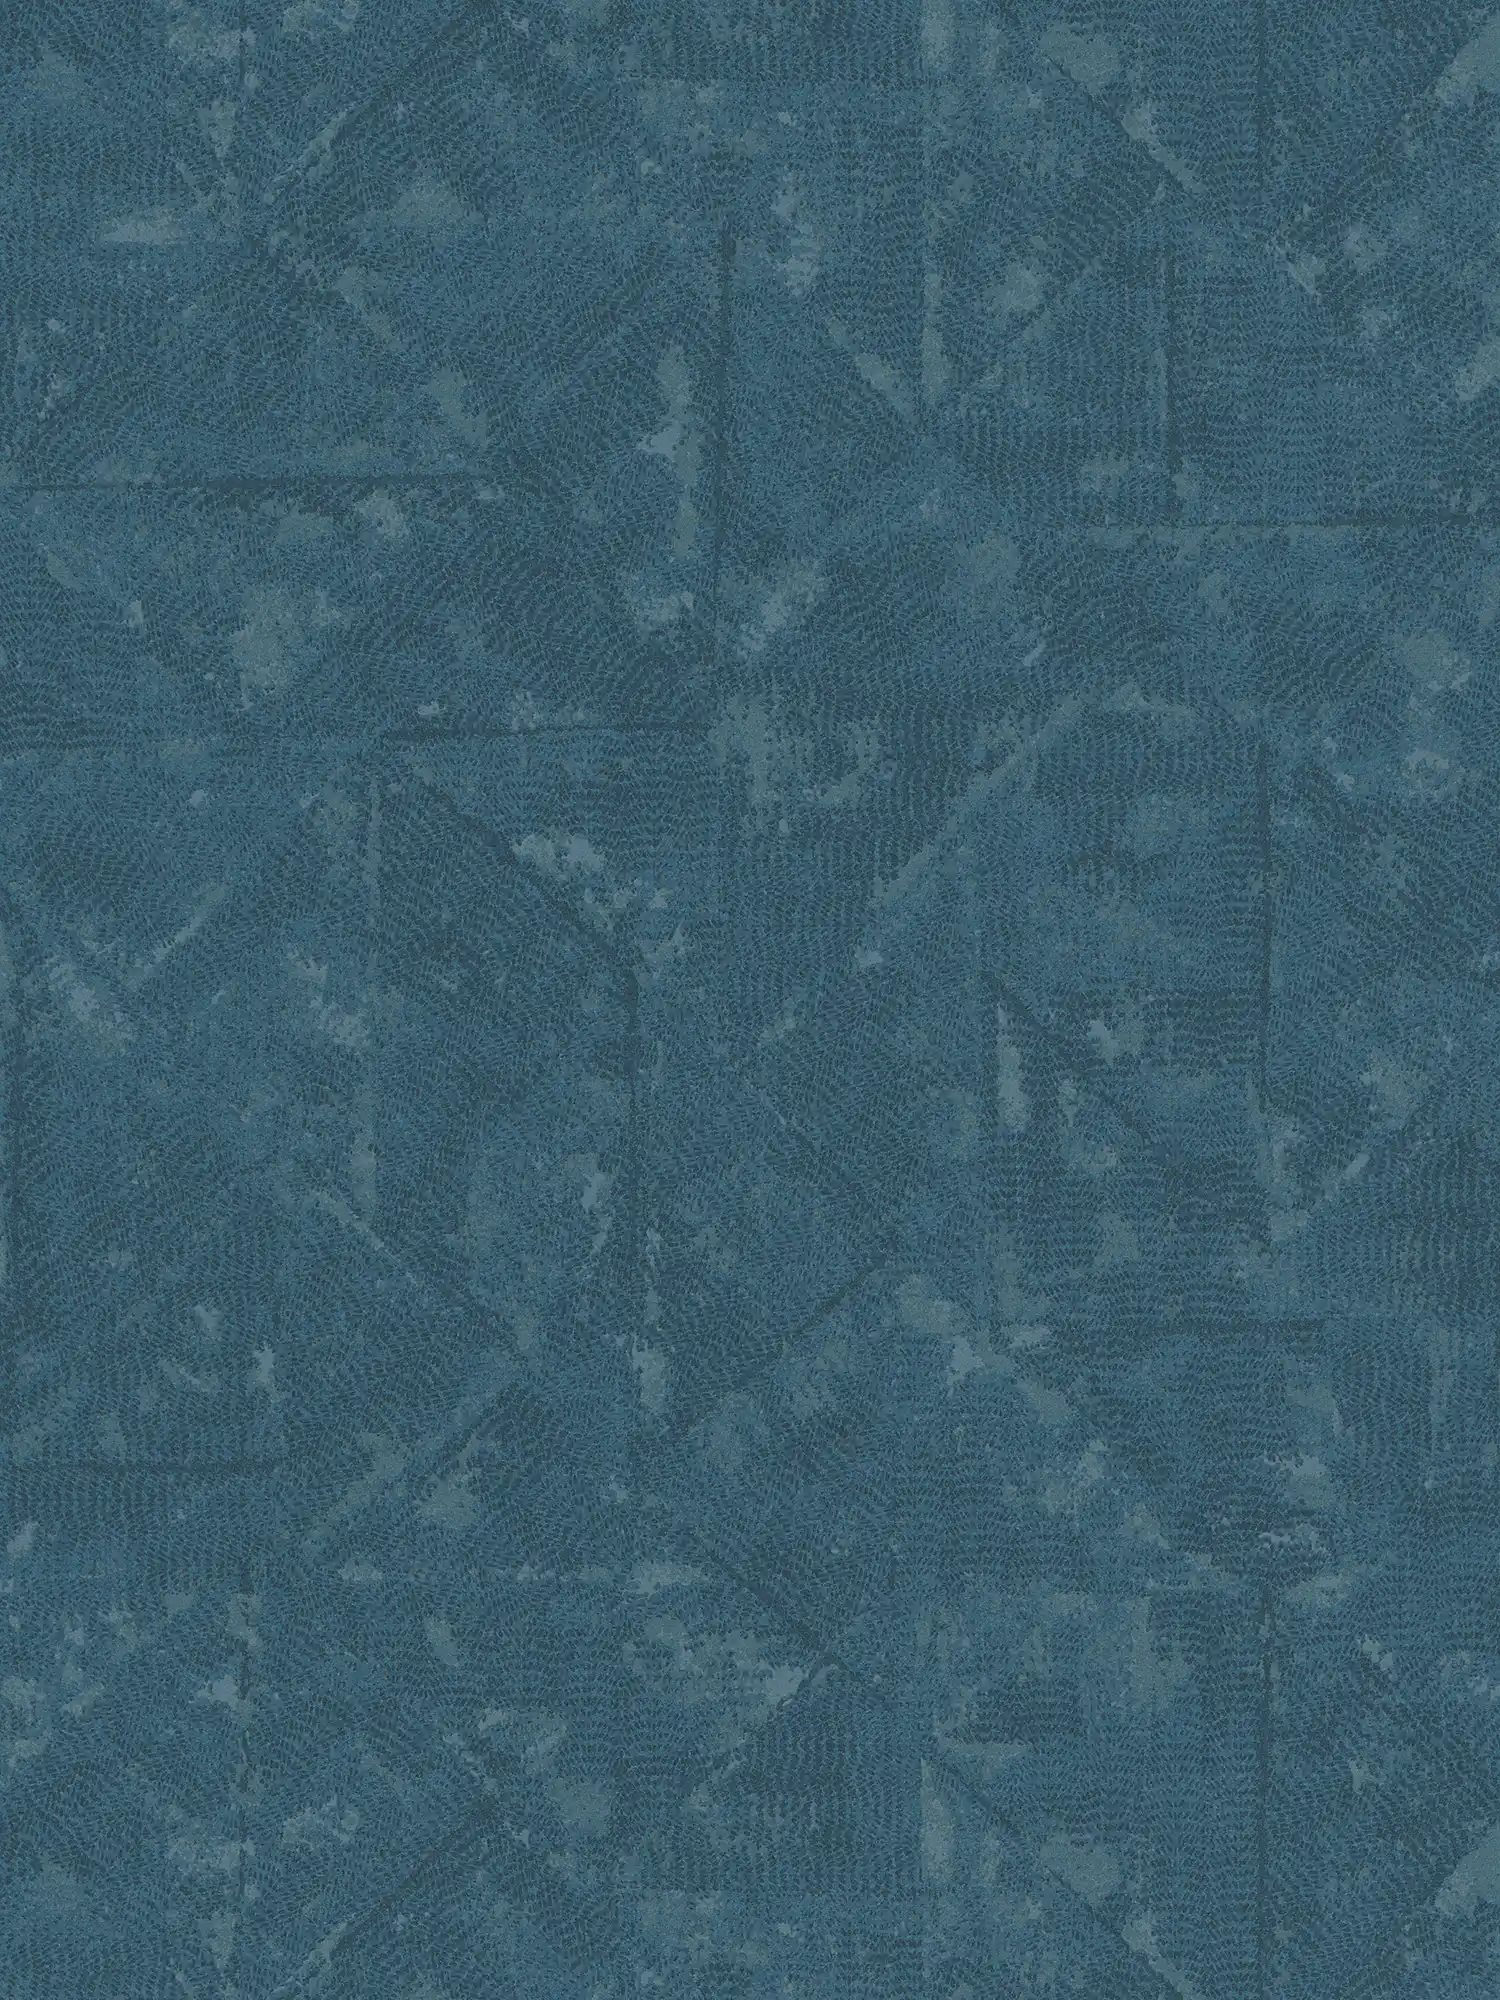 Petrol vliesbehang asymmetrische details - blauw, grijs
